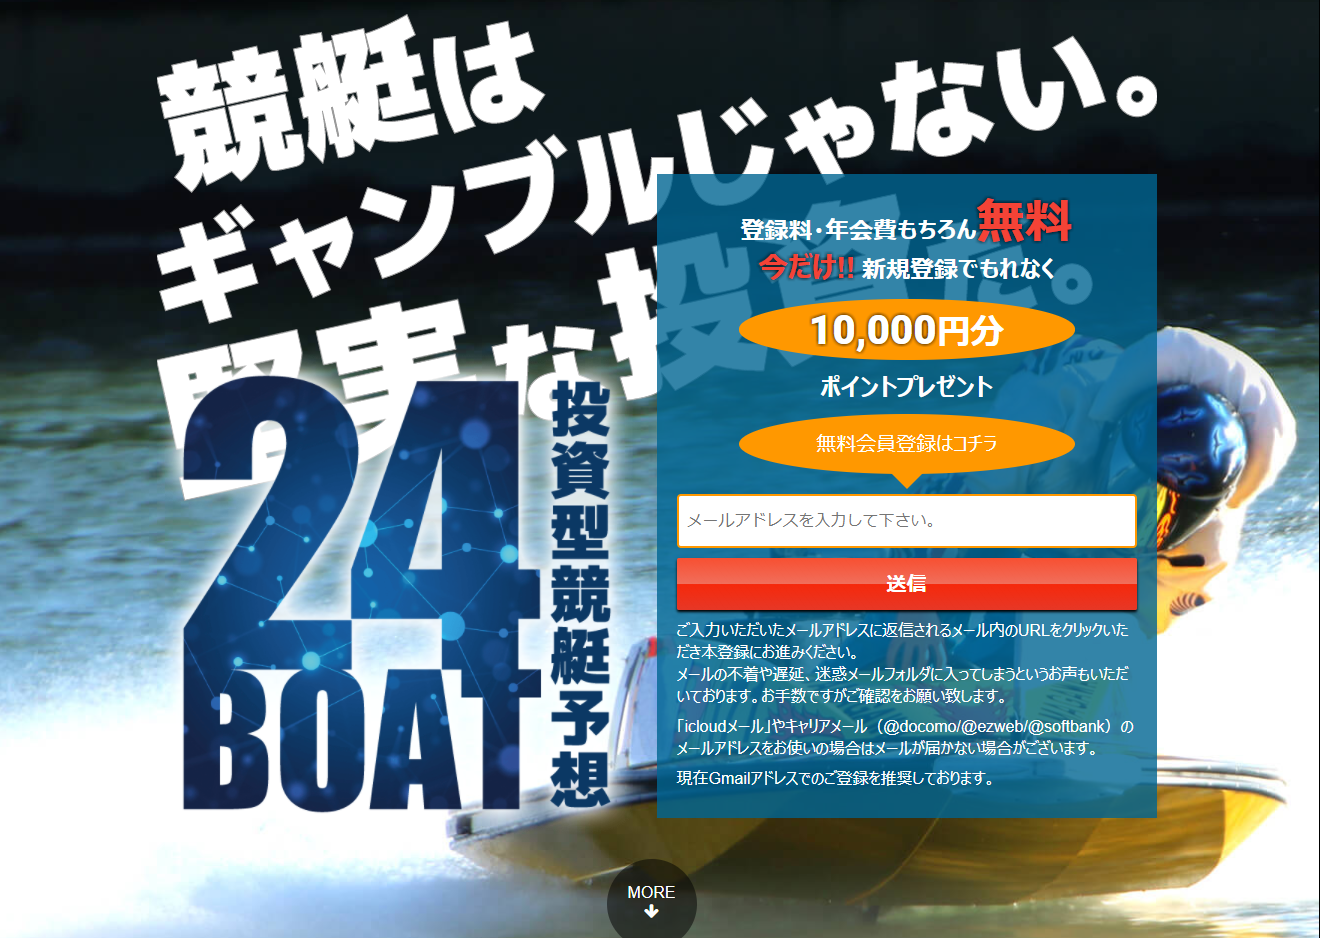 優良競艇予想サイト 24ボート(24BOAT)